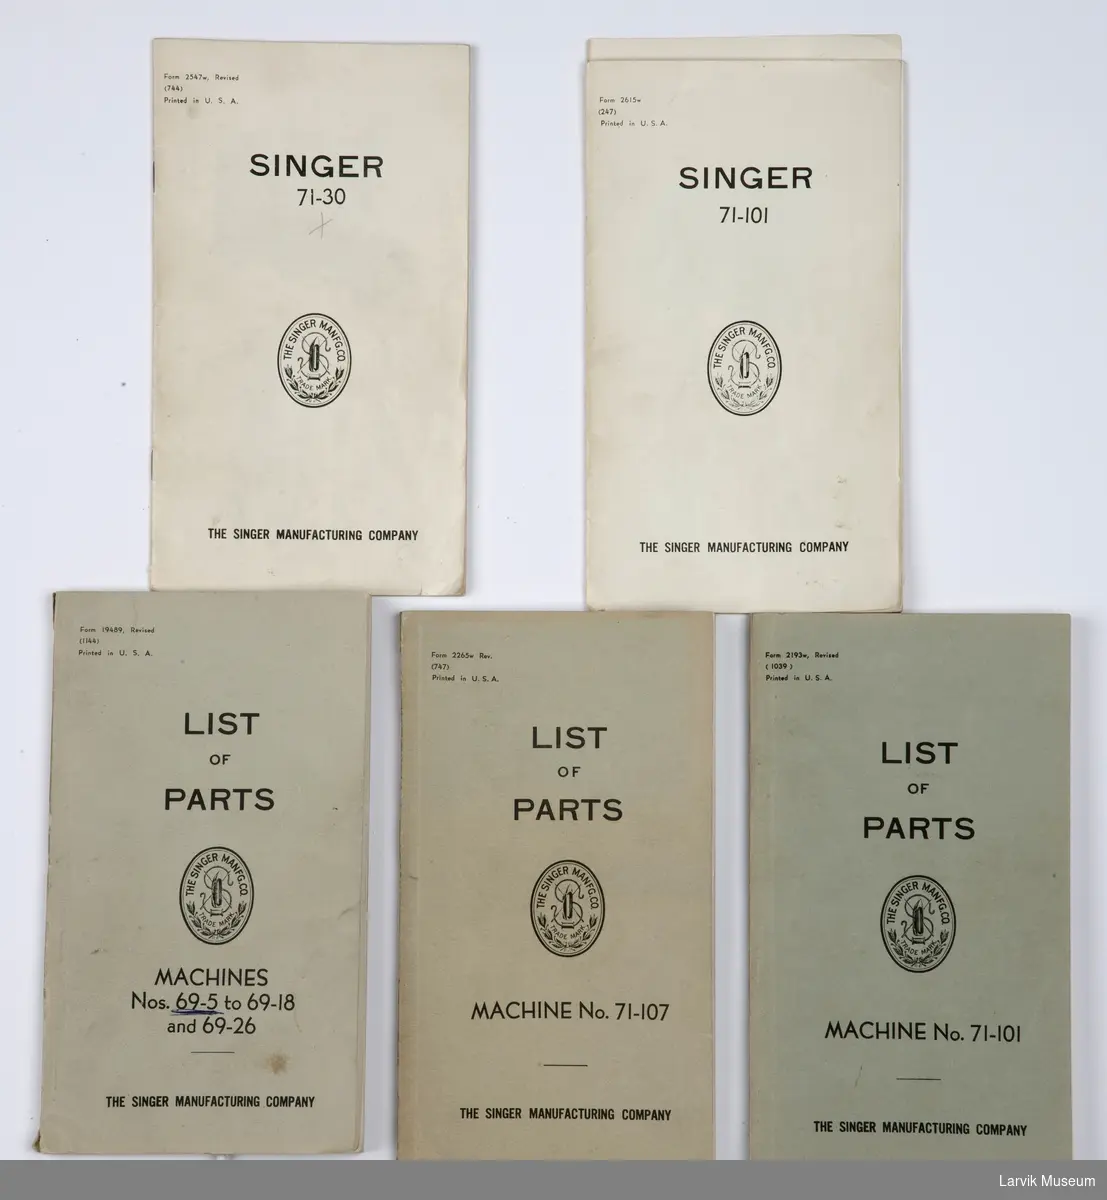 5 stk. brukerveiledninger til industri-symaskin, merket Singer. Engelsk tekst